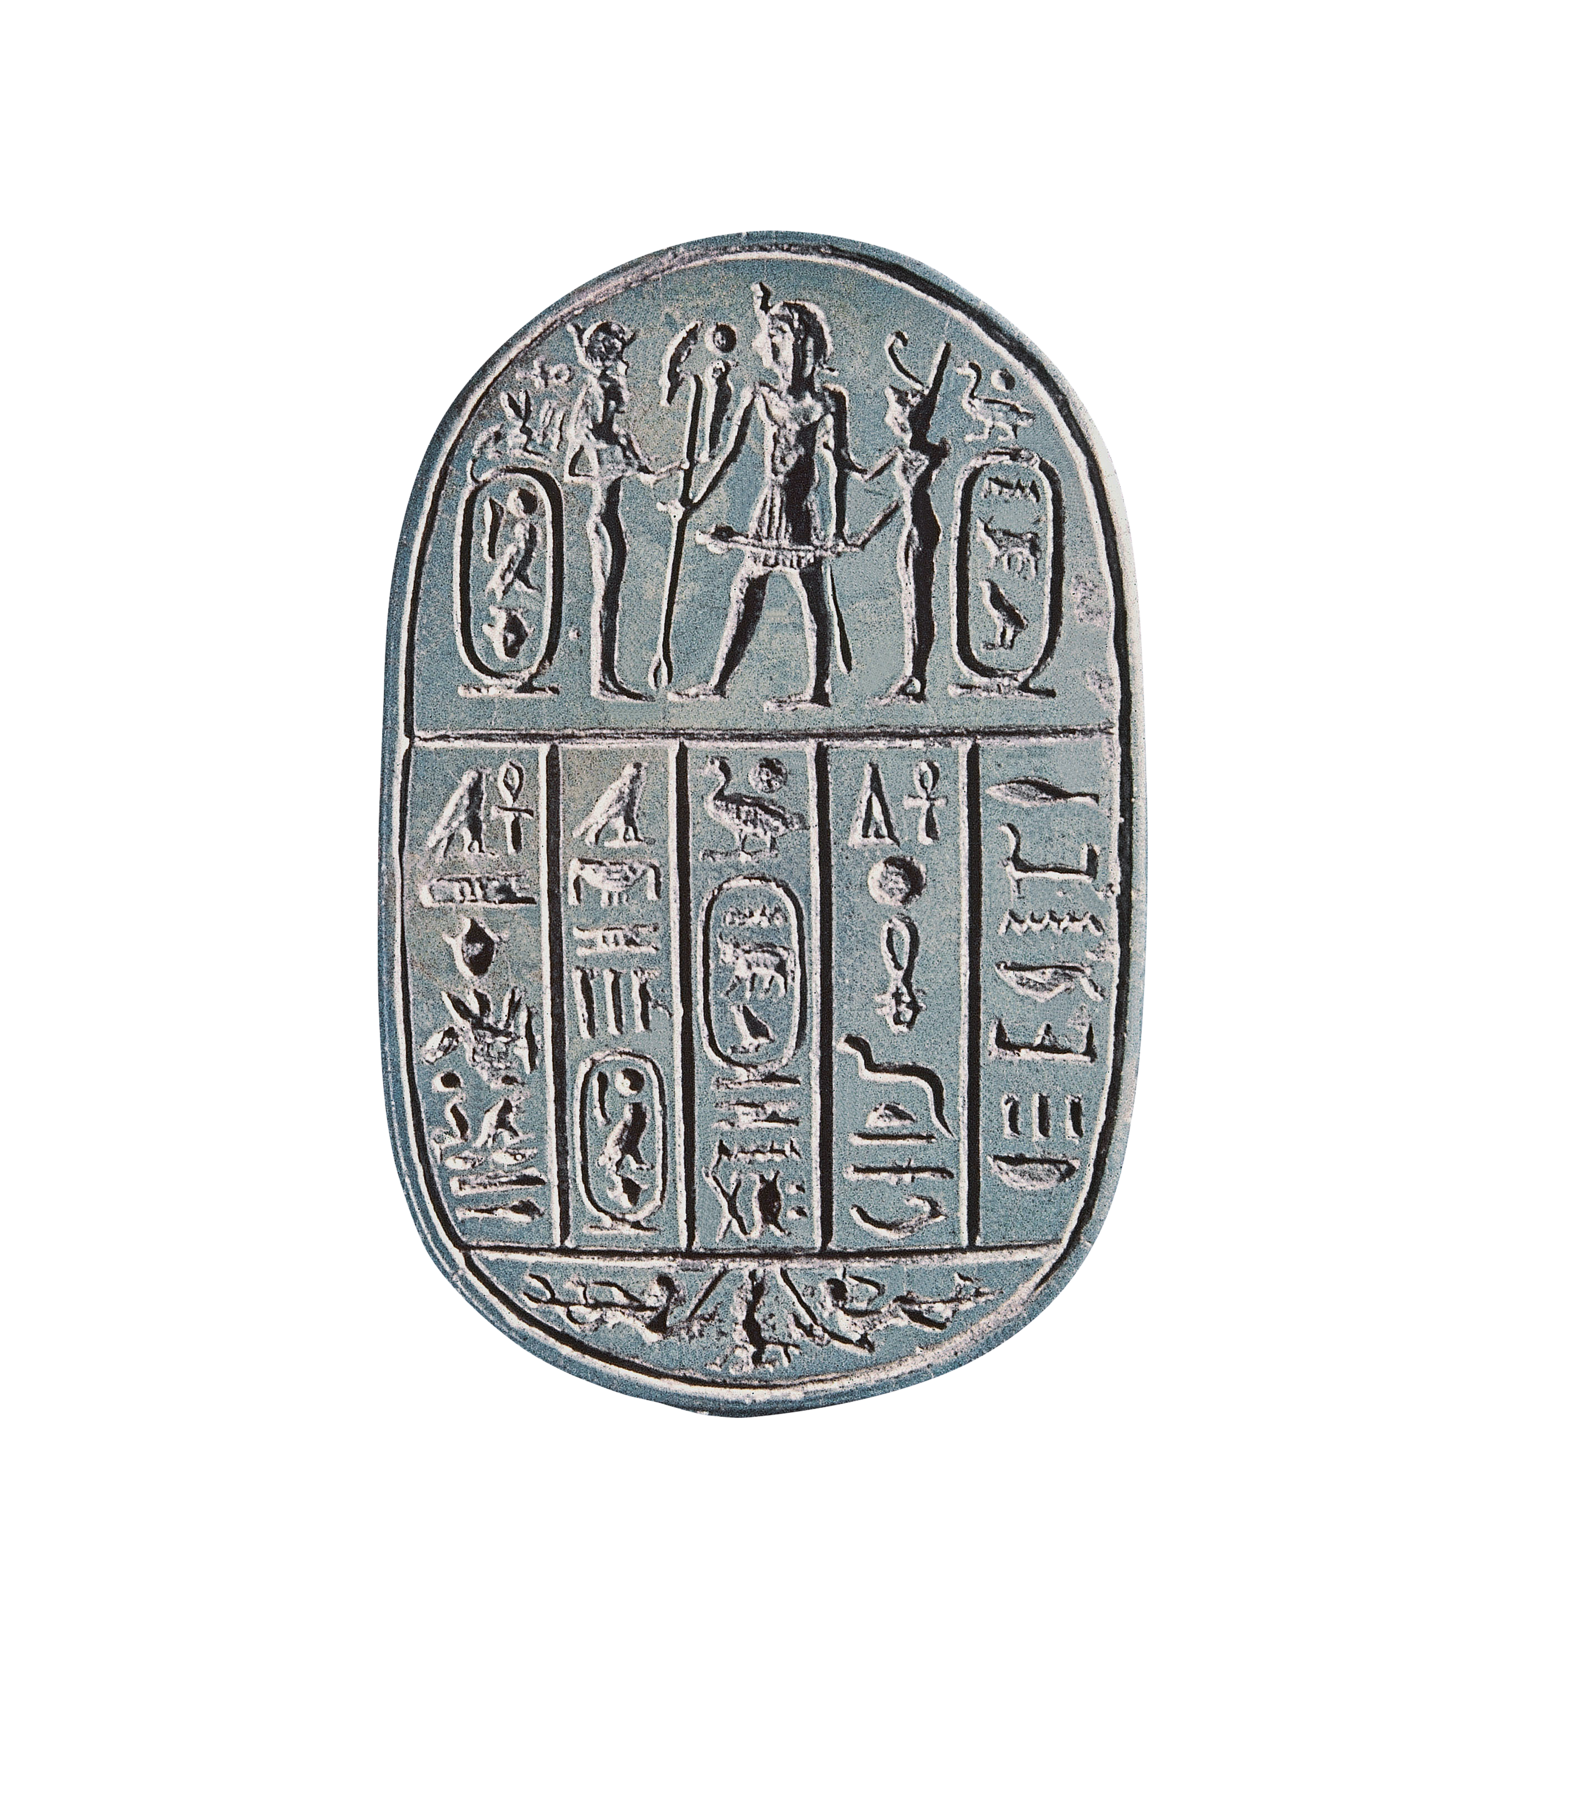 Artefato. Uma placa de pedra de formato ovalado, contendo vários hieróglifos.